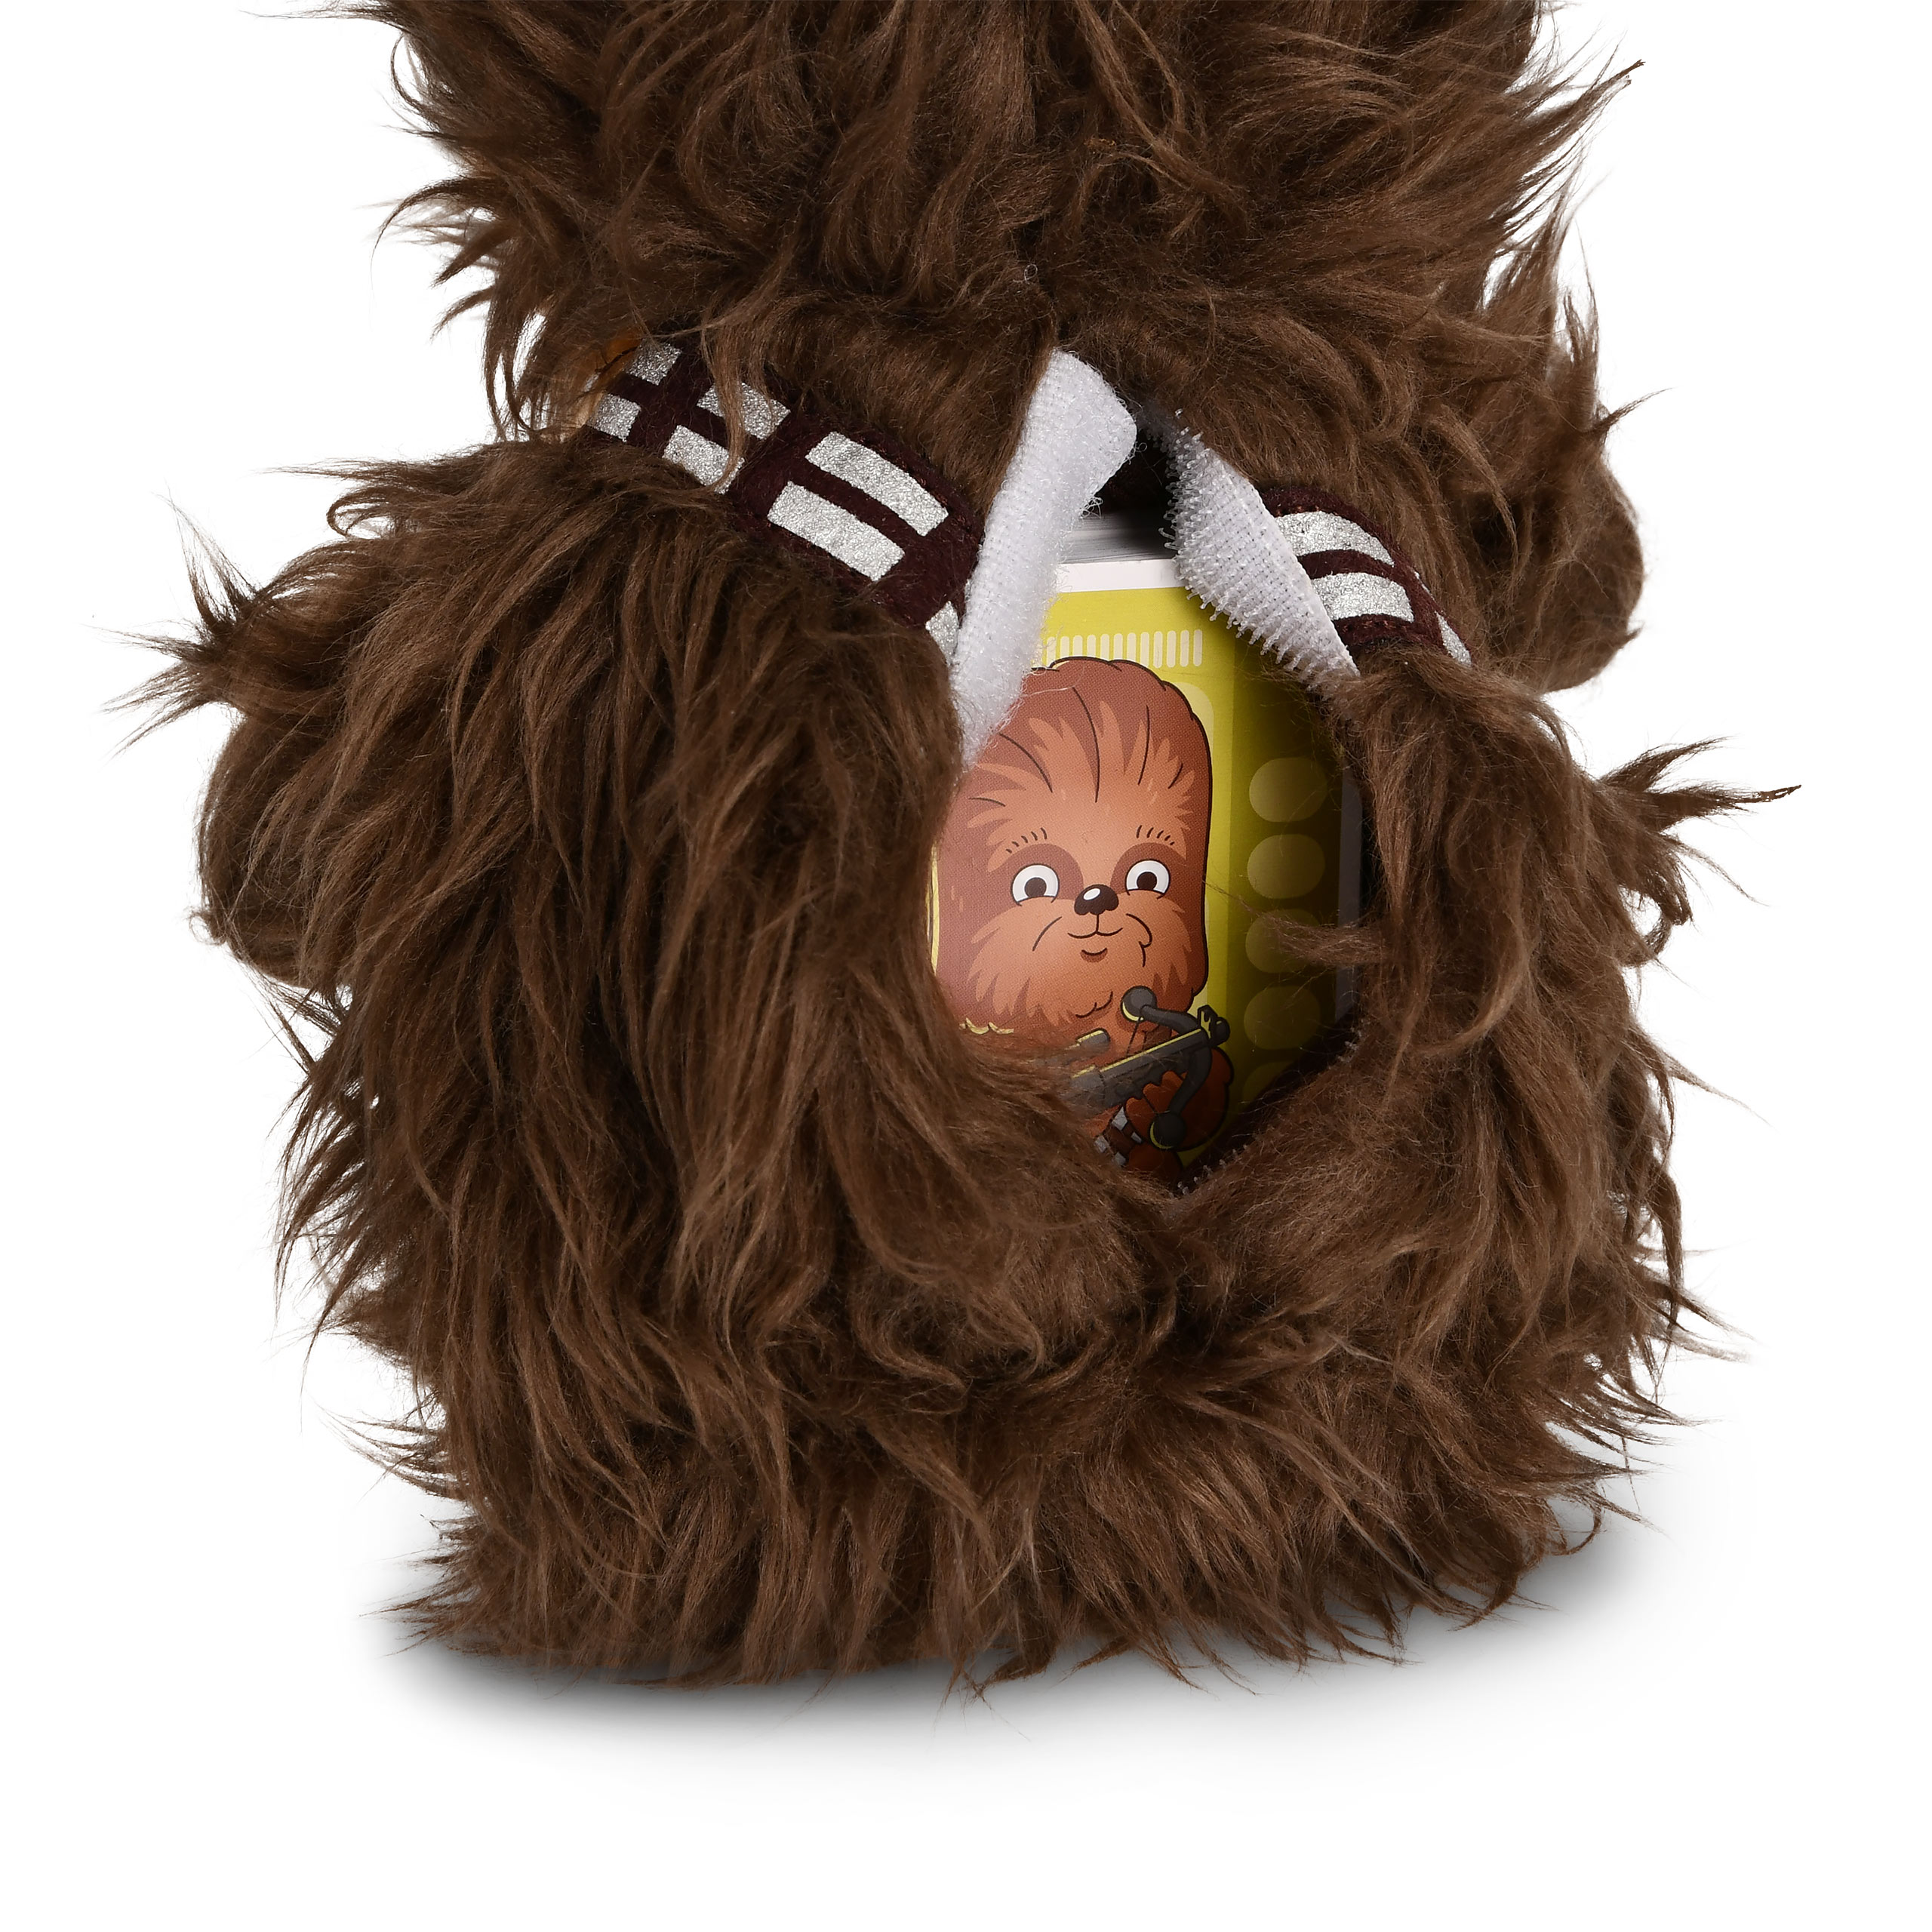 Chewbacca Plüschfigur Kartenspiel - Star Wars